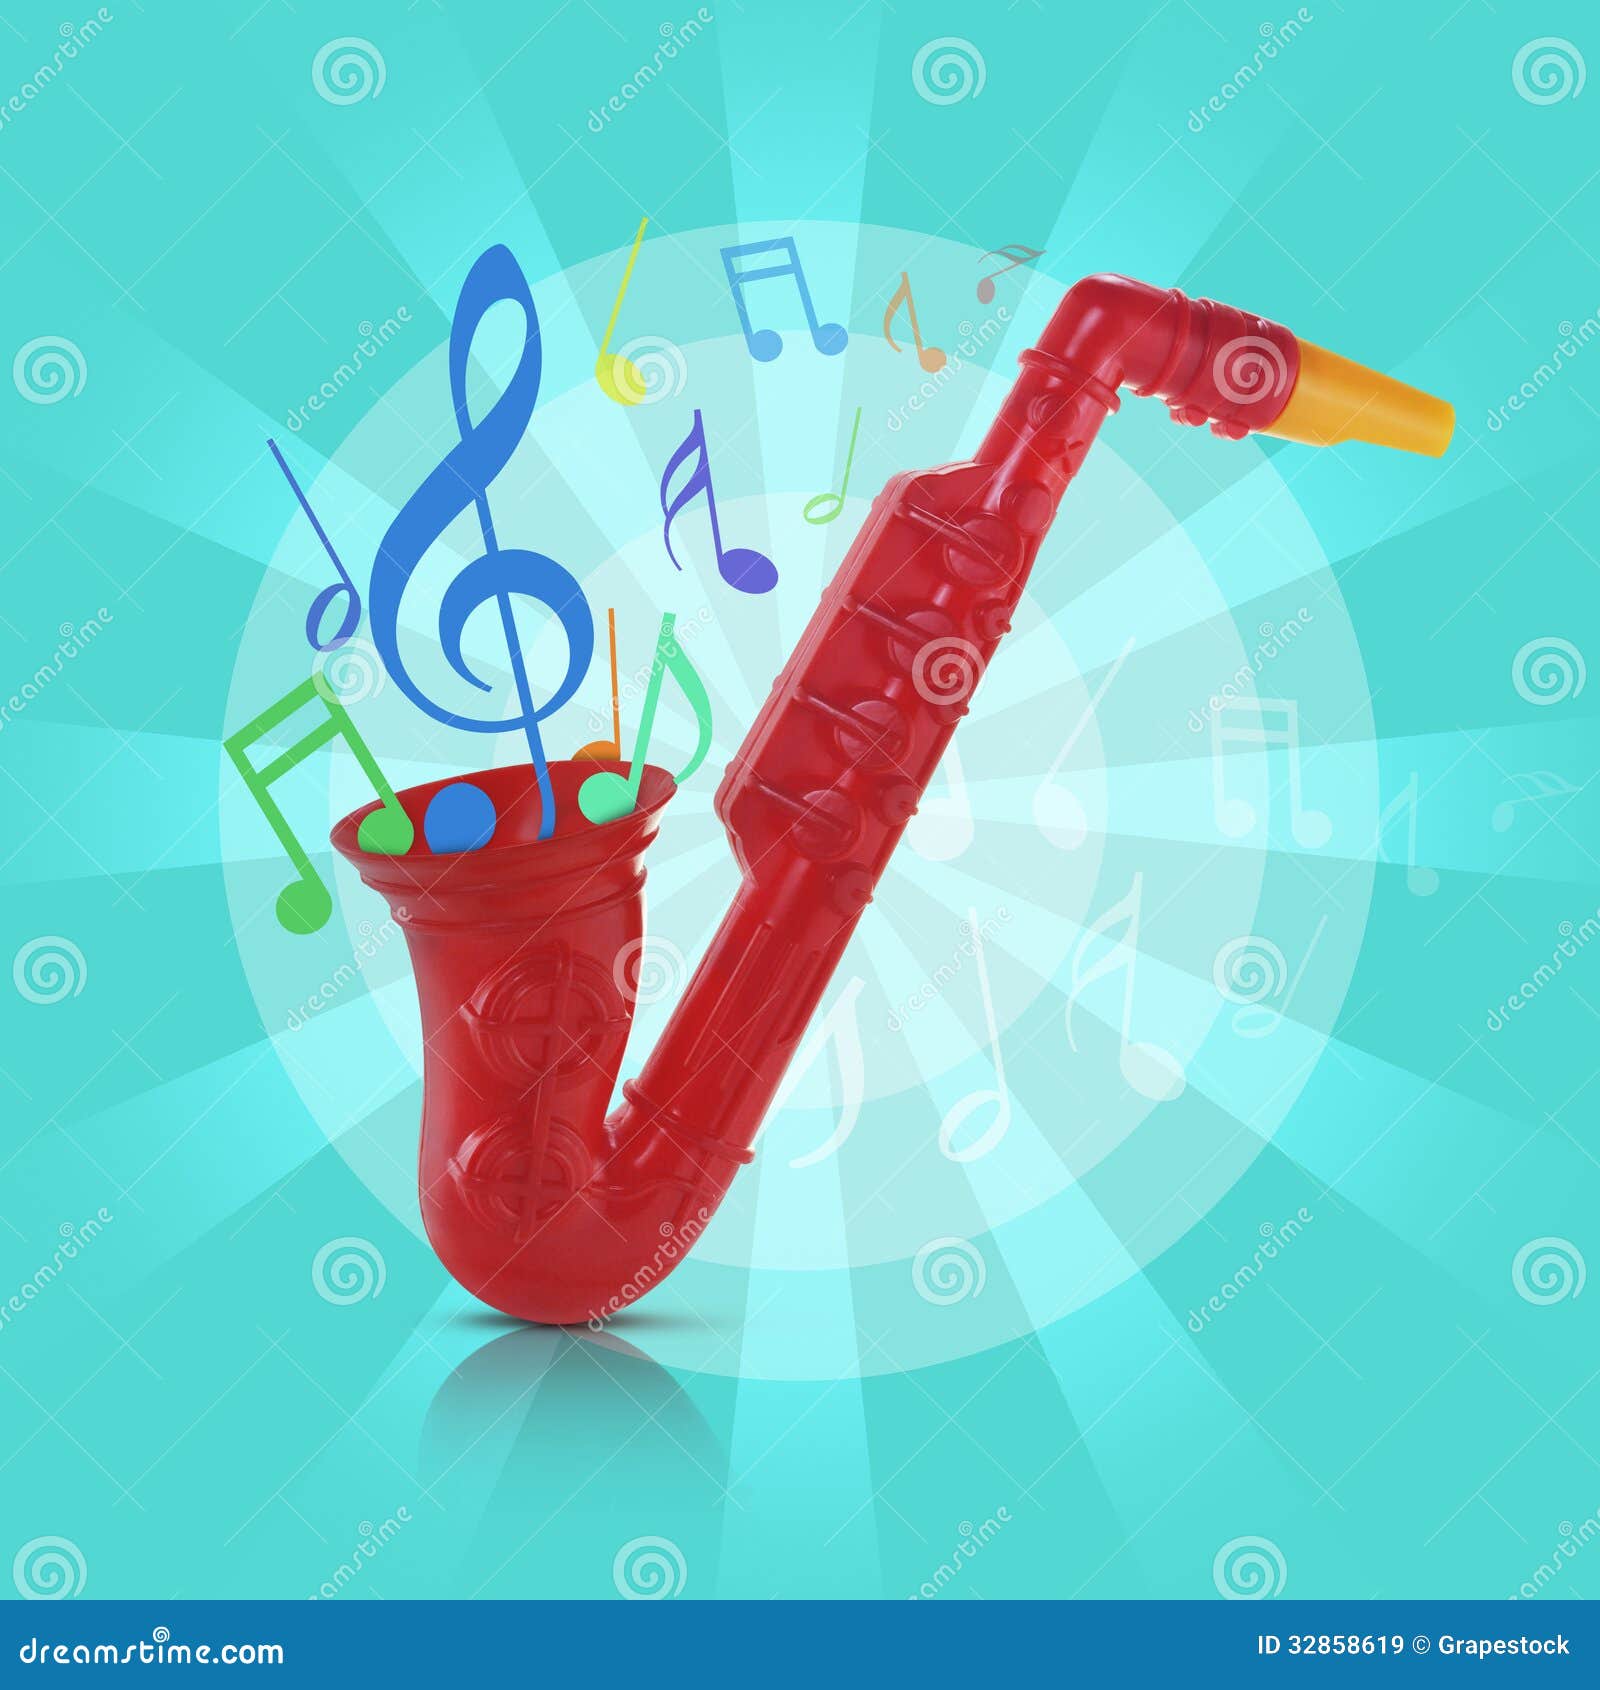 Juguete del saxofón imagen de archivo. Imagen de instrumento - 32858619